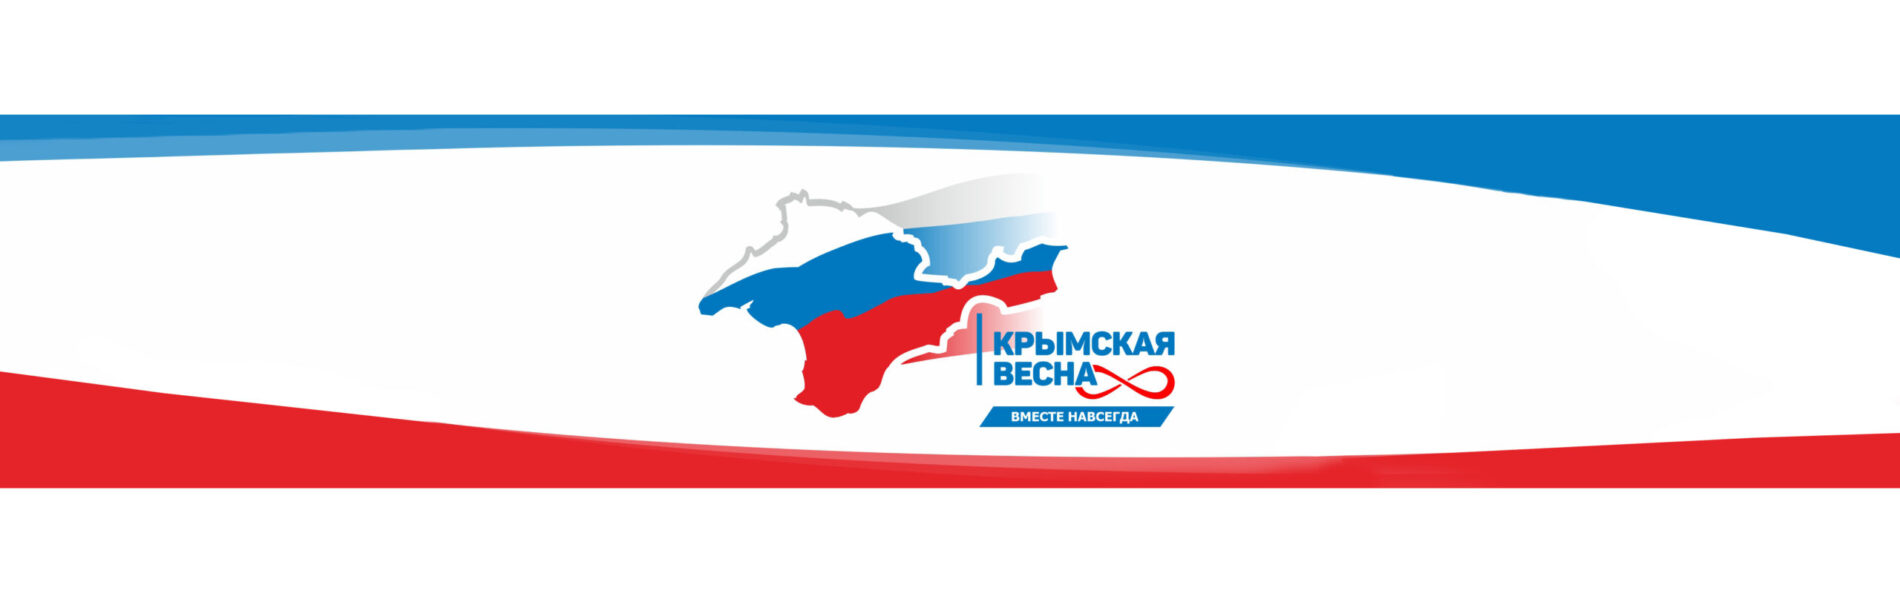 Приглашаем  отметить  8-ю  годовщину  Крымской  весны